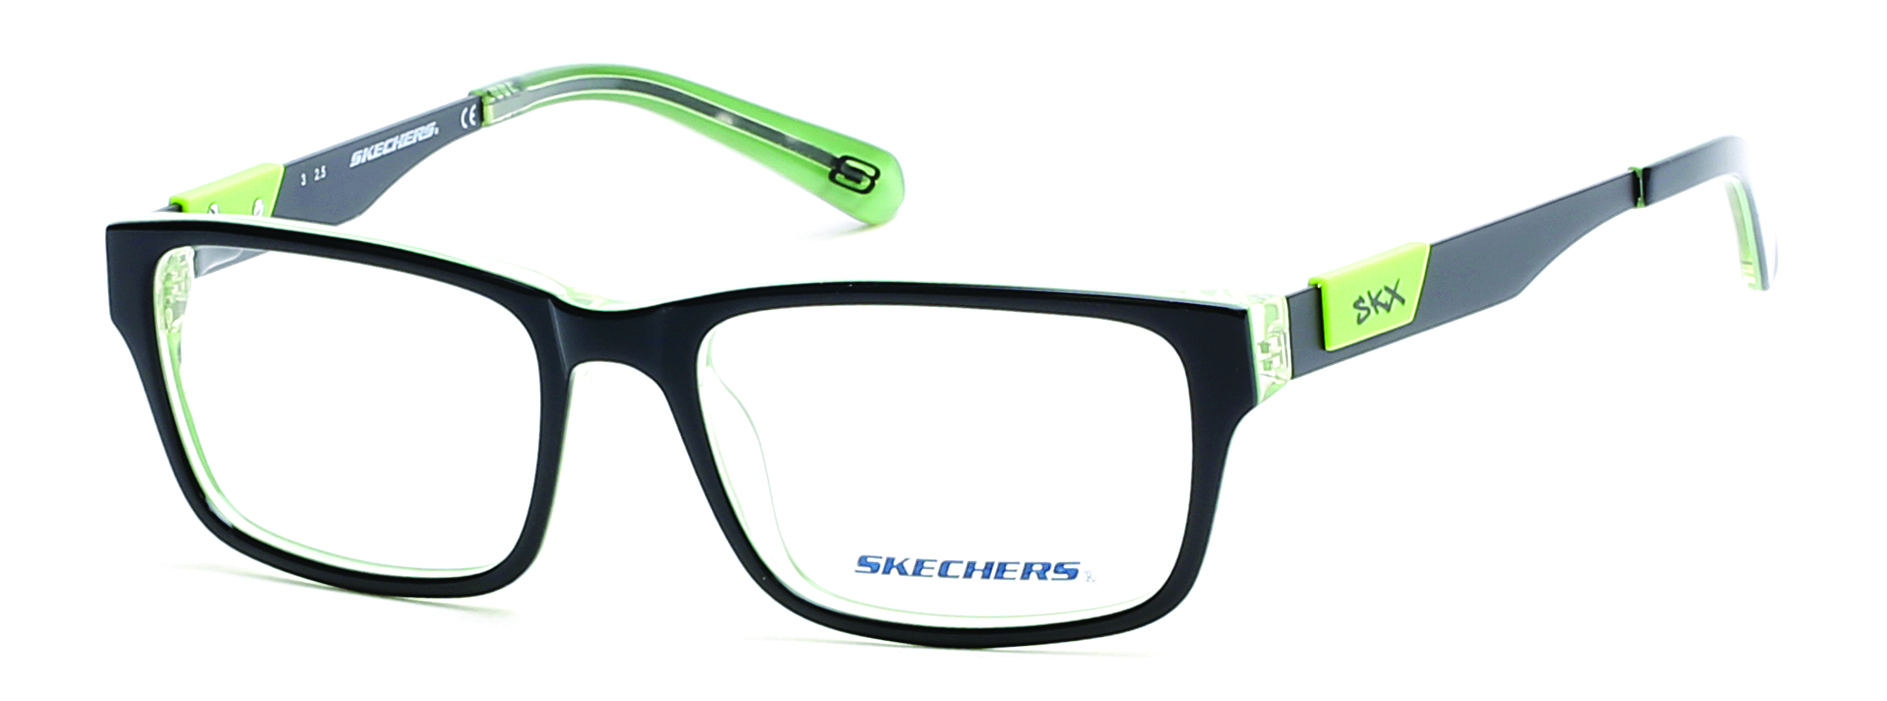 skechers kids glasses